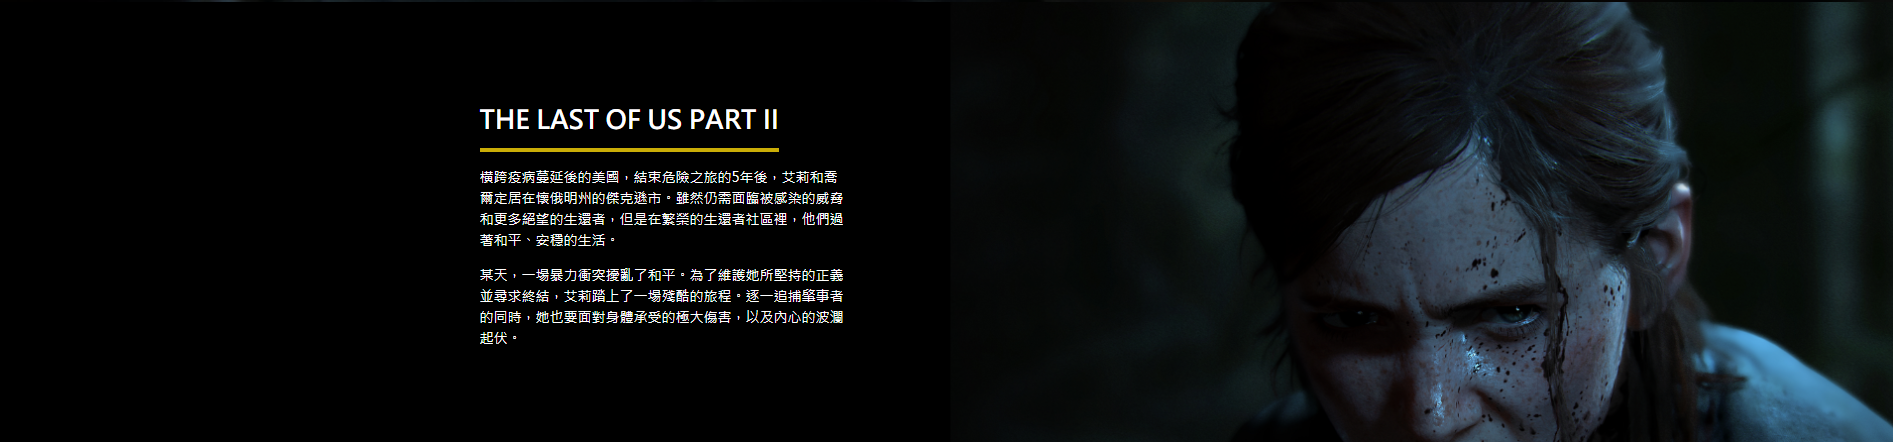 《最後生還者2》中文專題網站上線 欣賞31張高清截圖